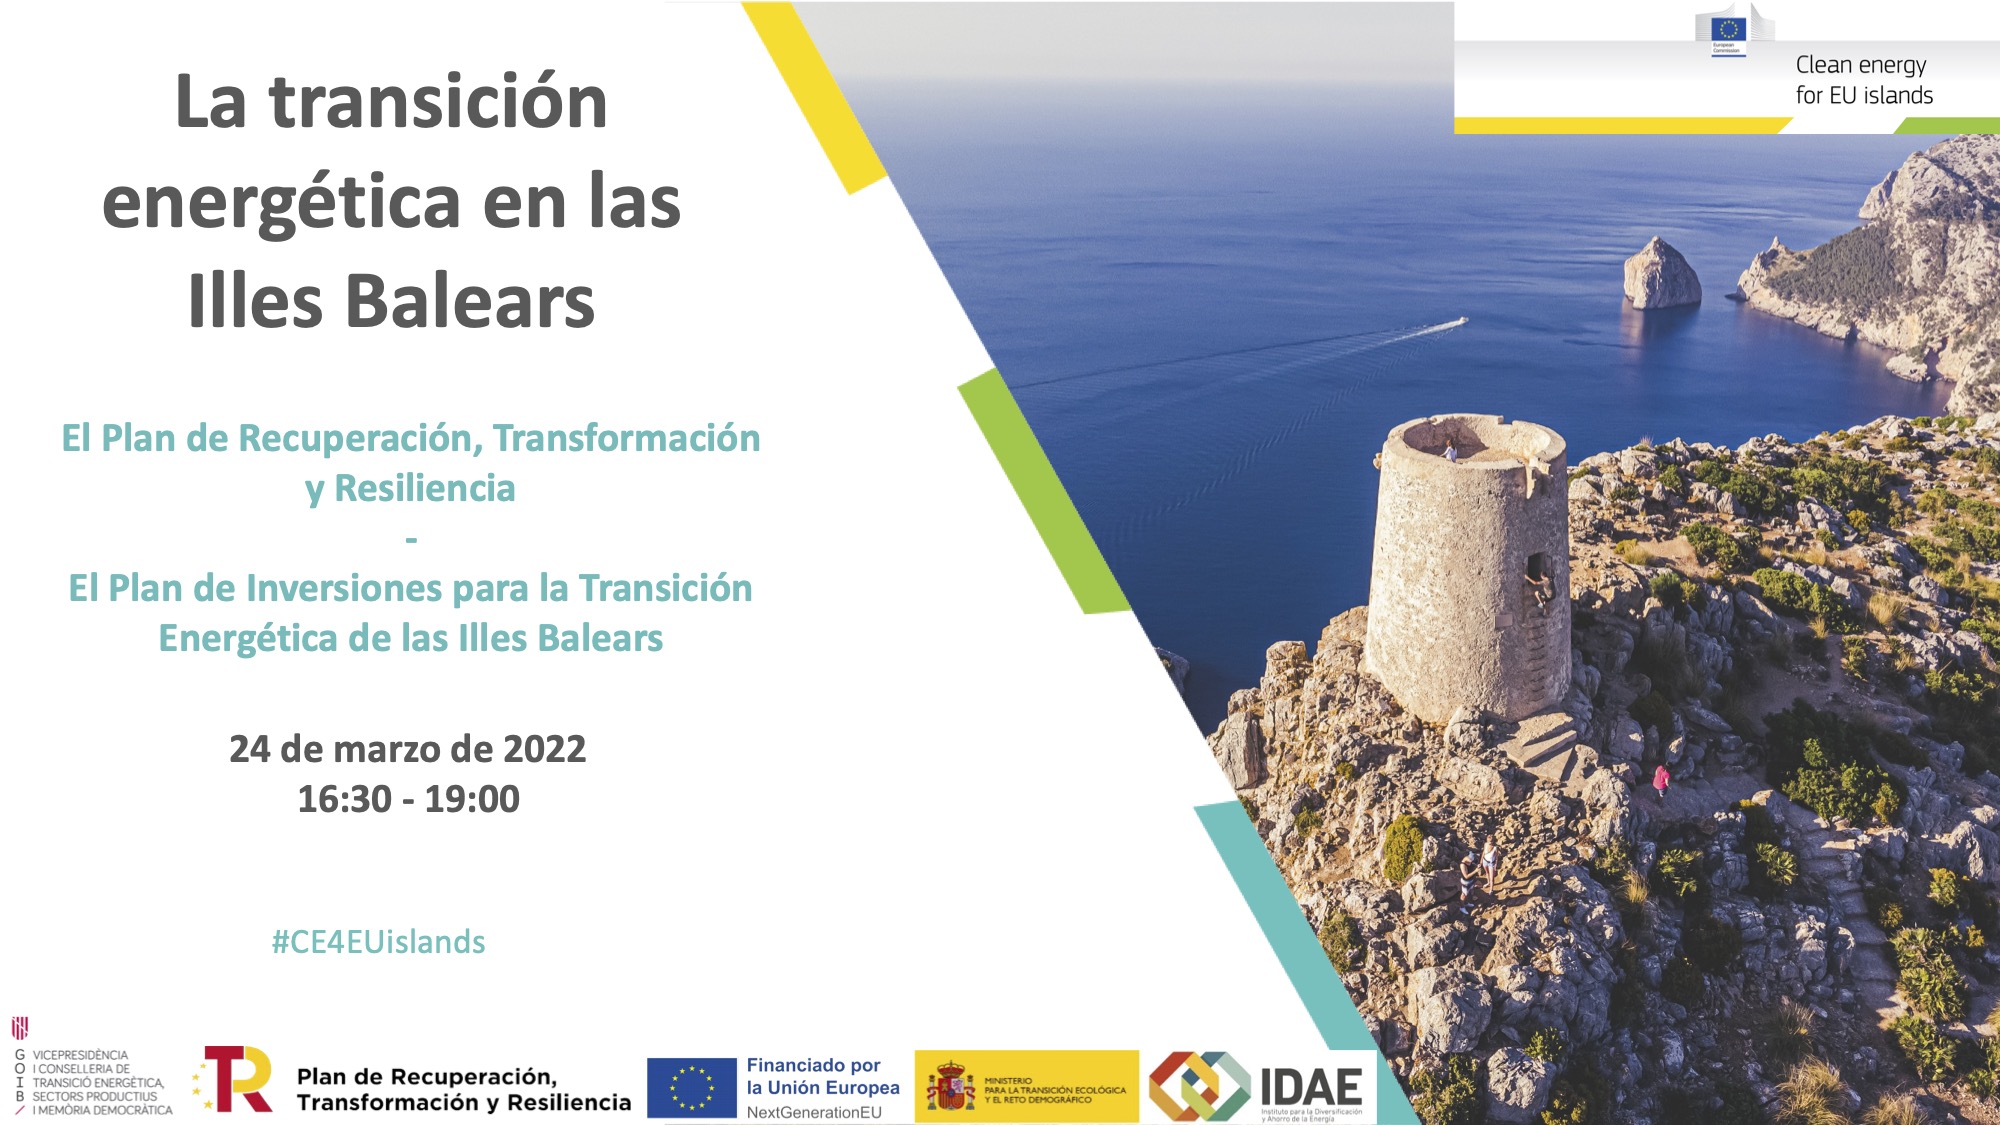 La transición energética en les Illes Balears